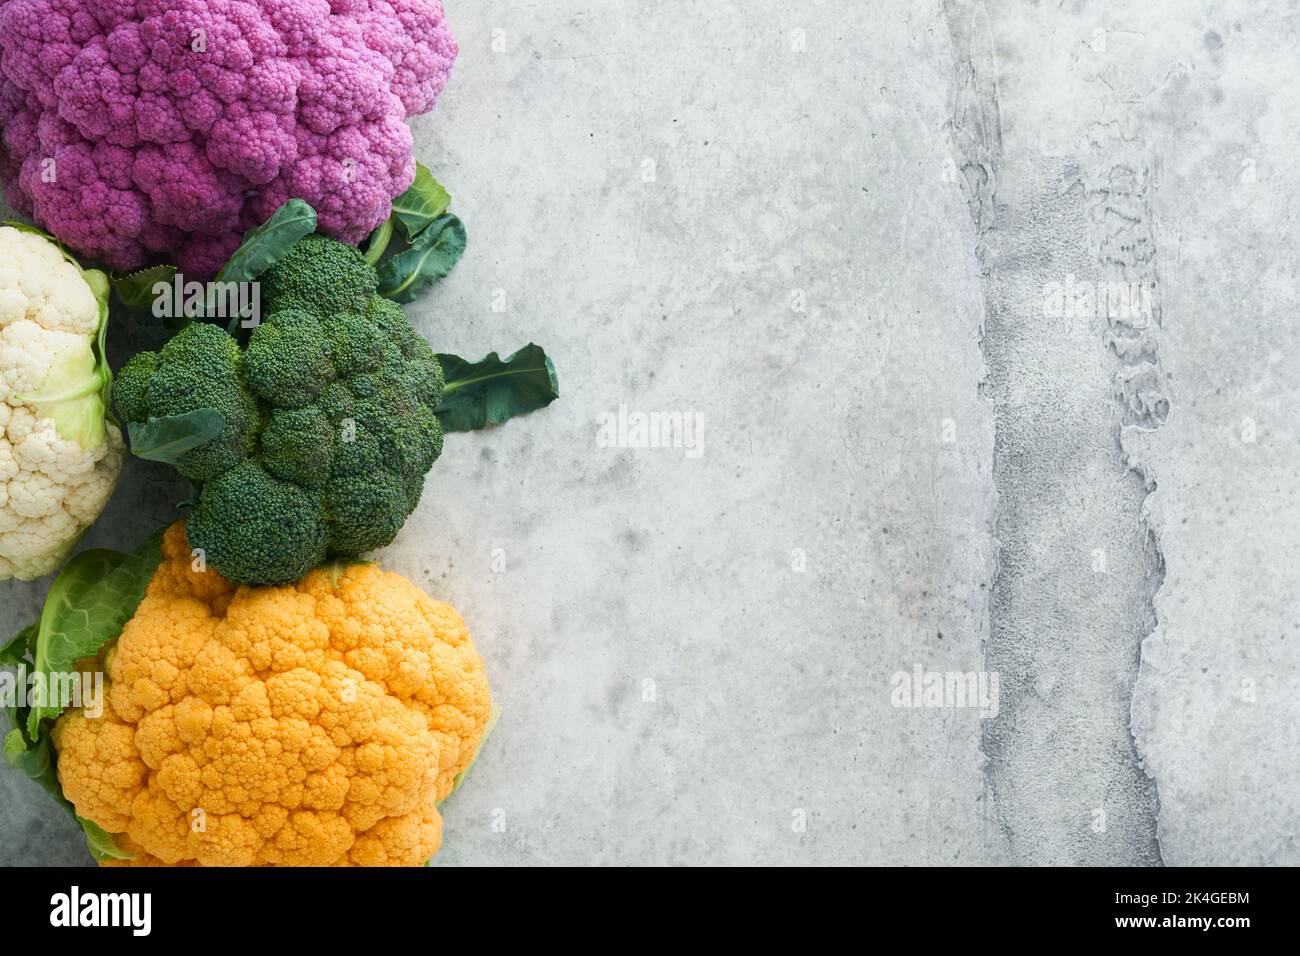 Cavolfiore di Colorfu. Vari tipi di cavolfiore su fondo grigio in cemento. Cavoli di colore viola, giallo, bianco e verde. Broccoli e Romanesco. Foto Stock